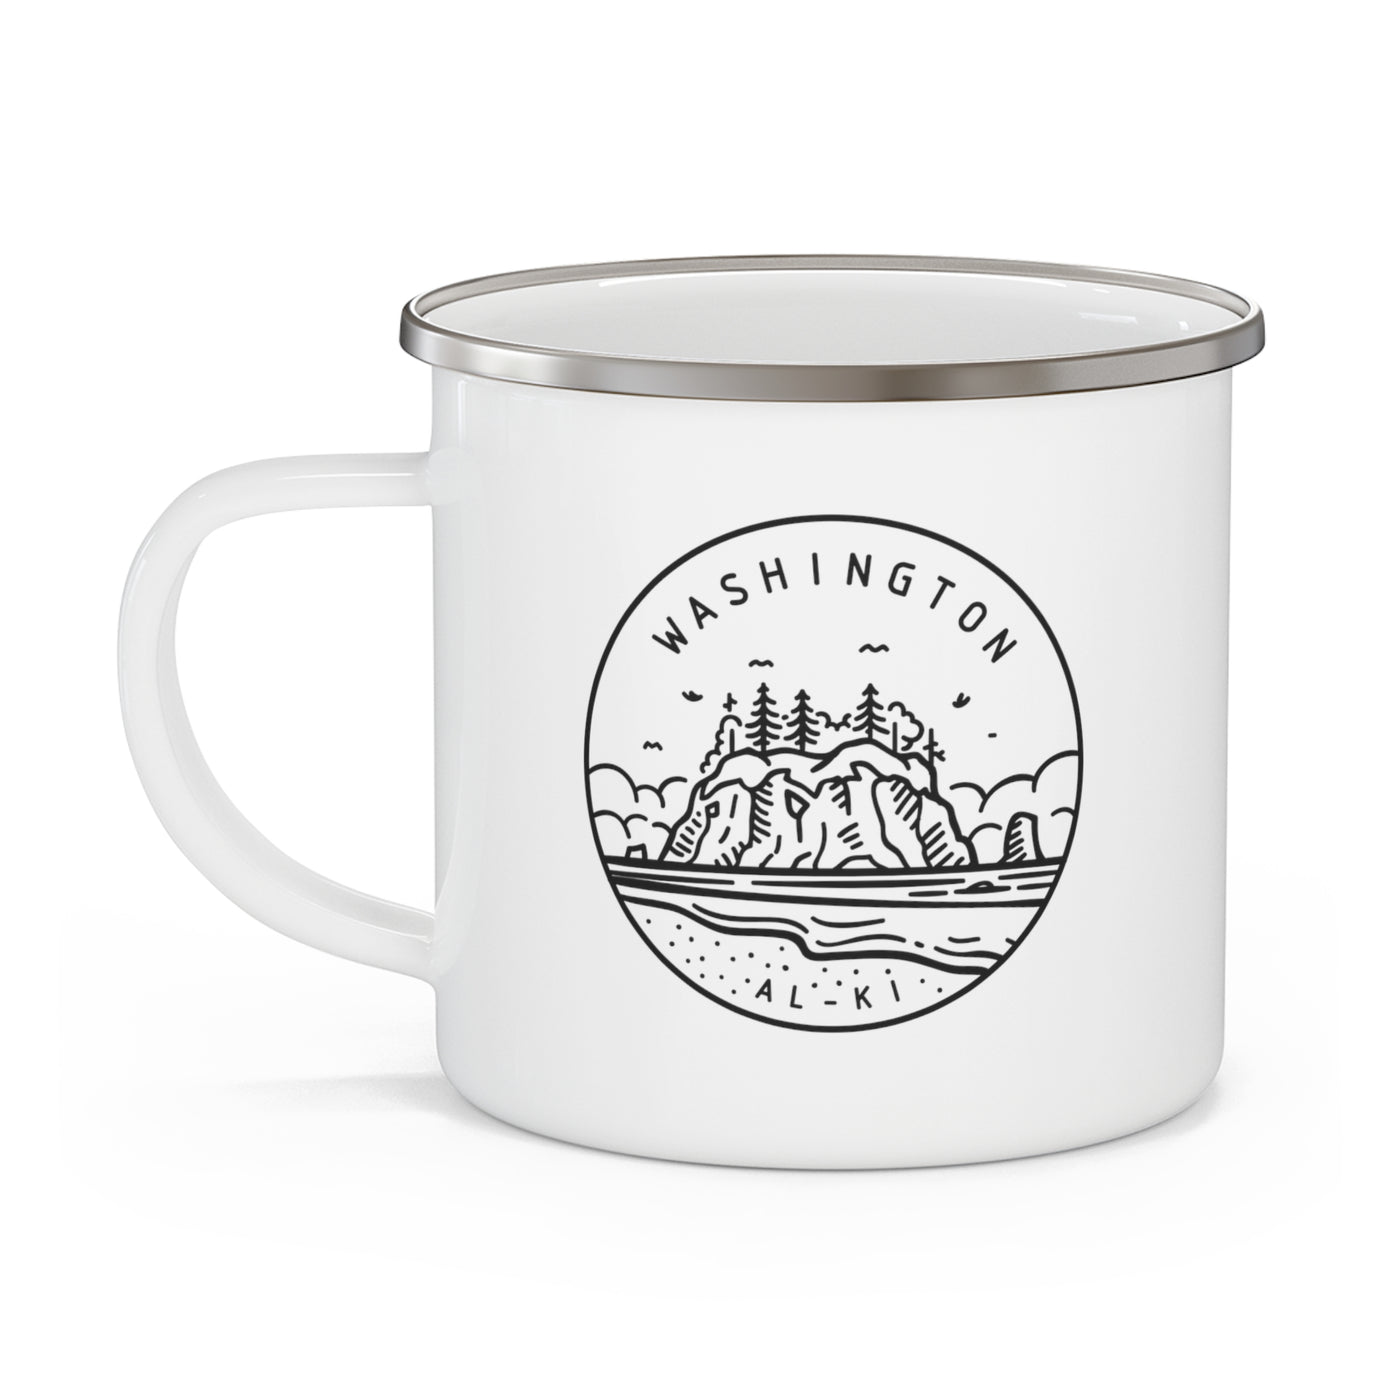 Washington State Motto Enamel Camping Mug